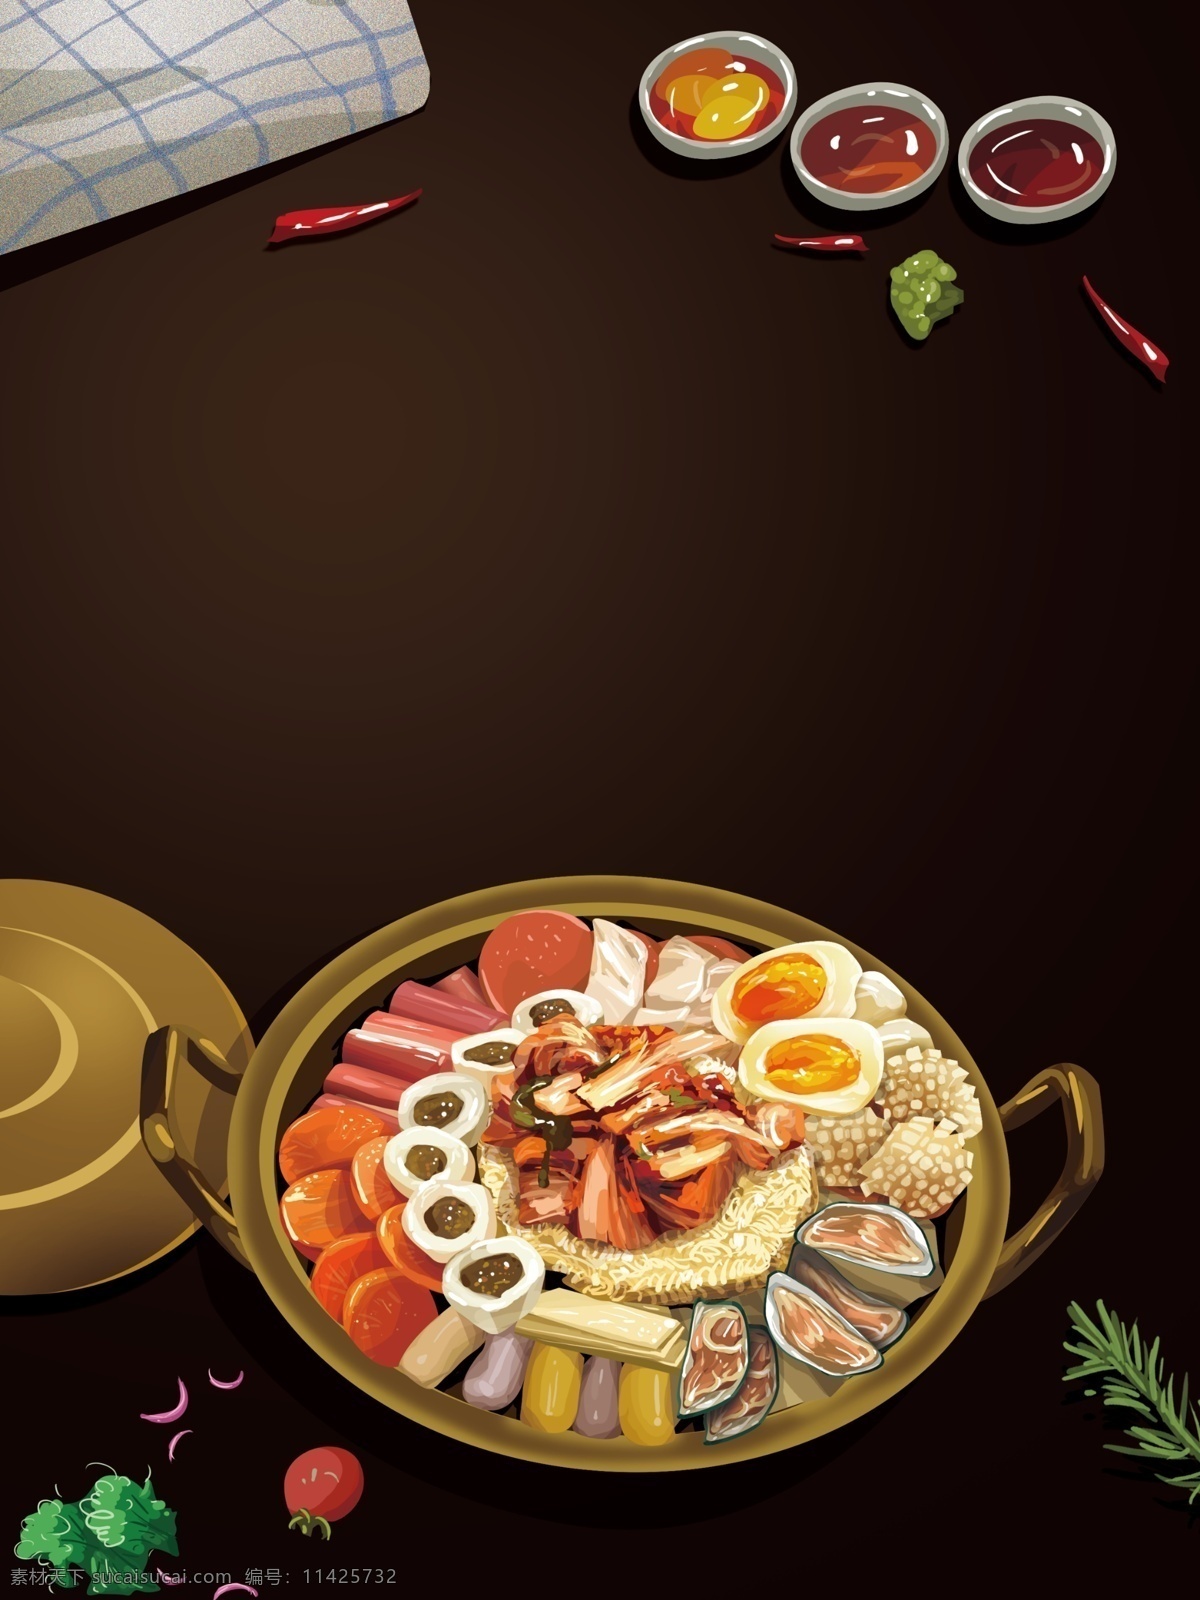 韩国 料理 海鲜 锅 插画 背景 韩国料理 海鲜锅 插画背景 通用背景 广告背景 背景素材 背景展板